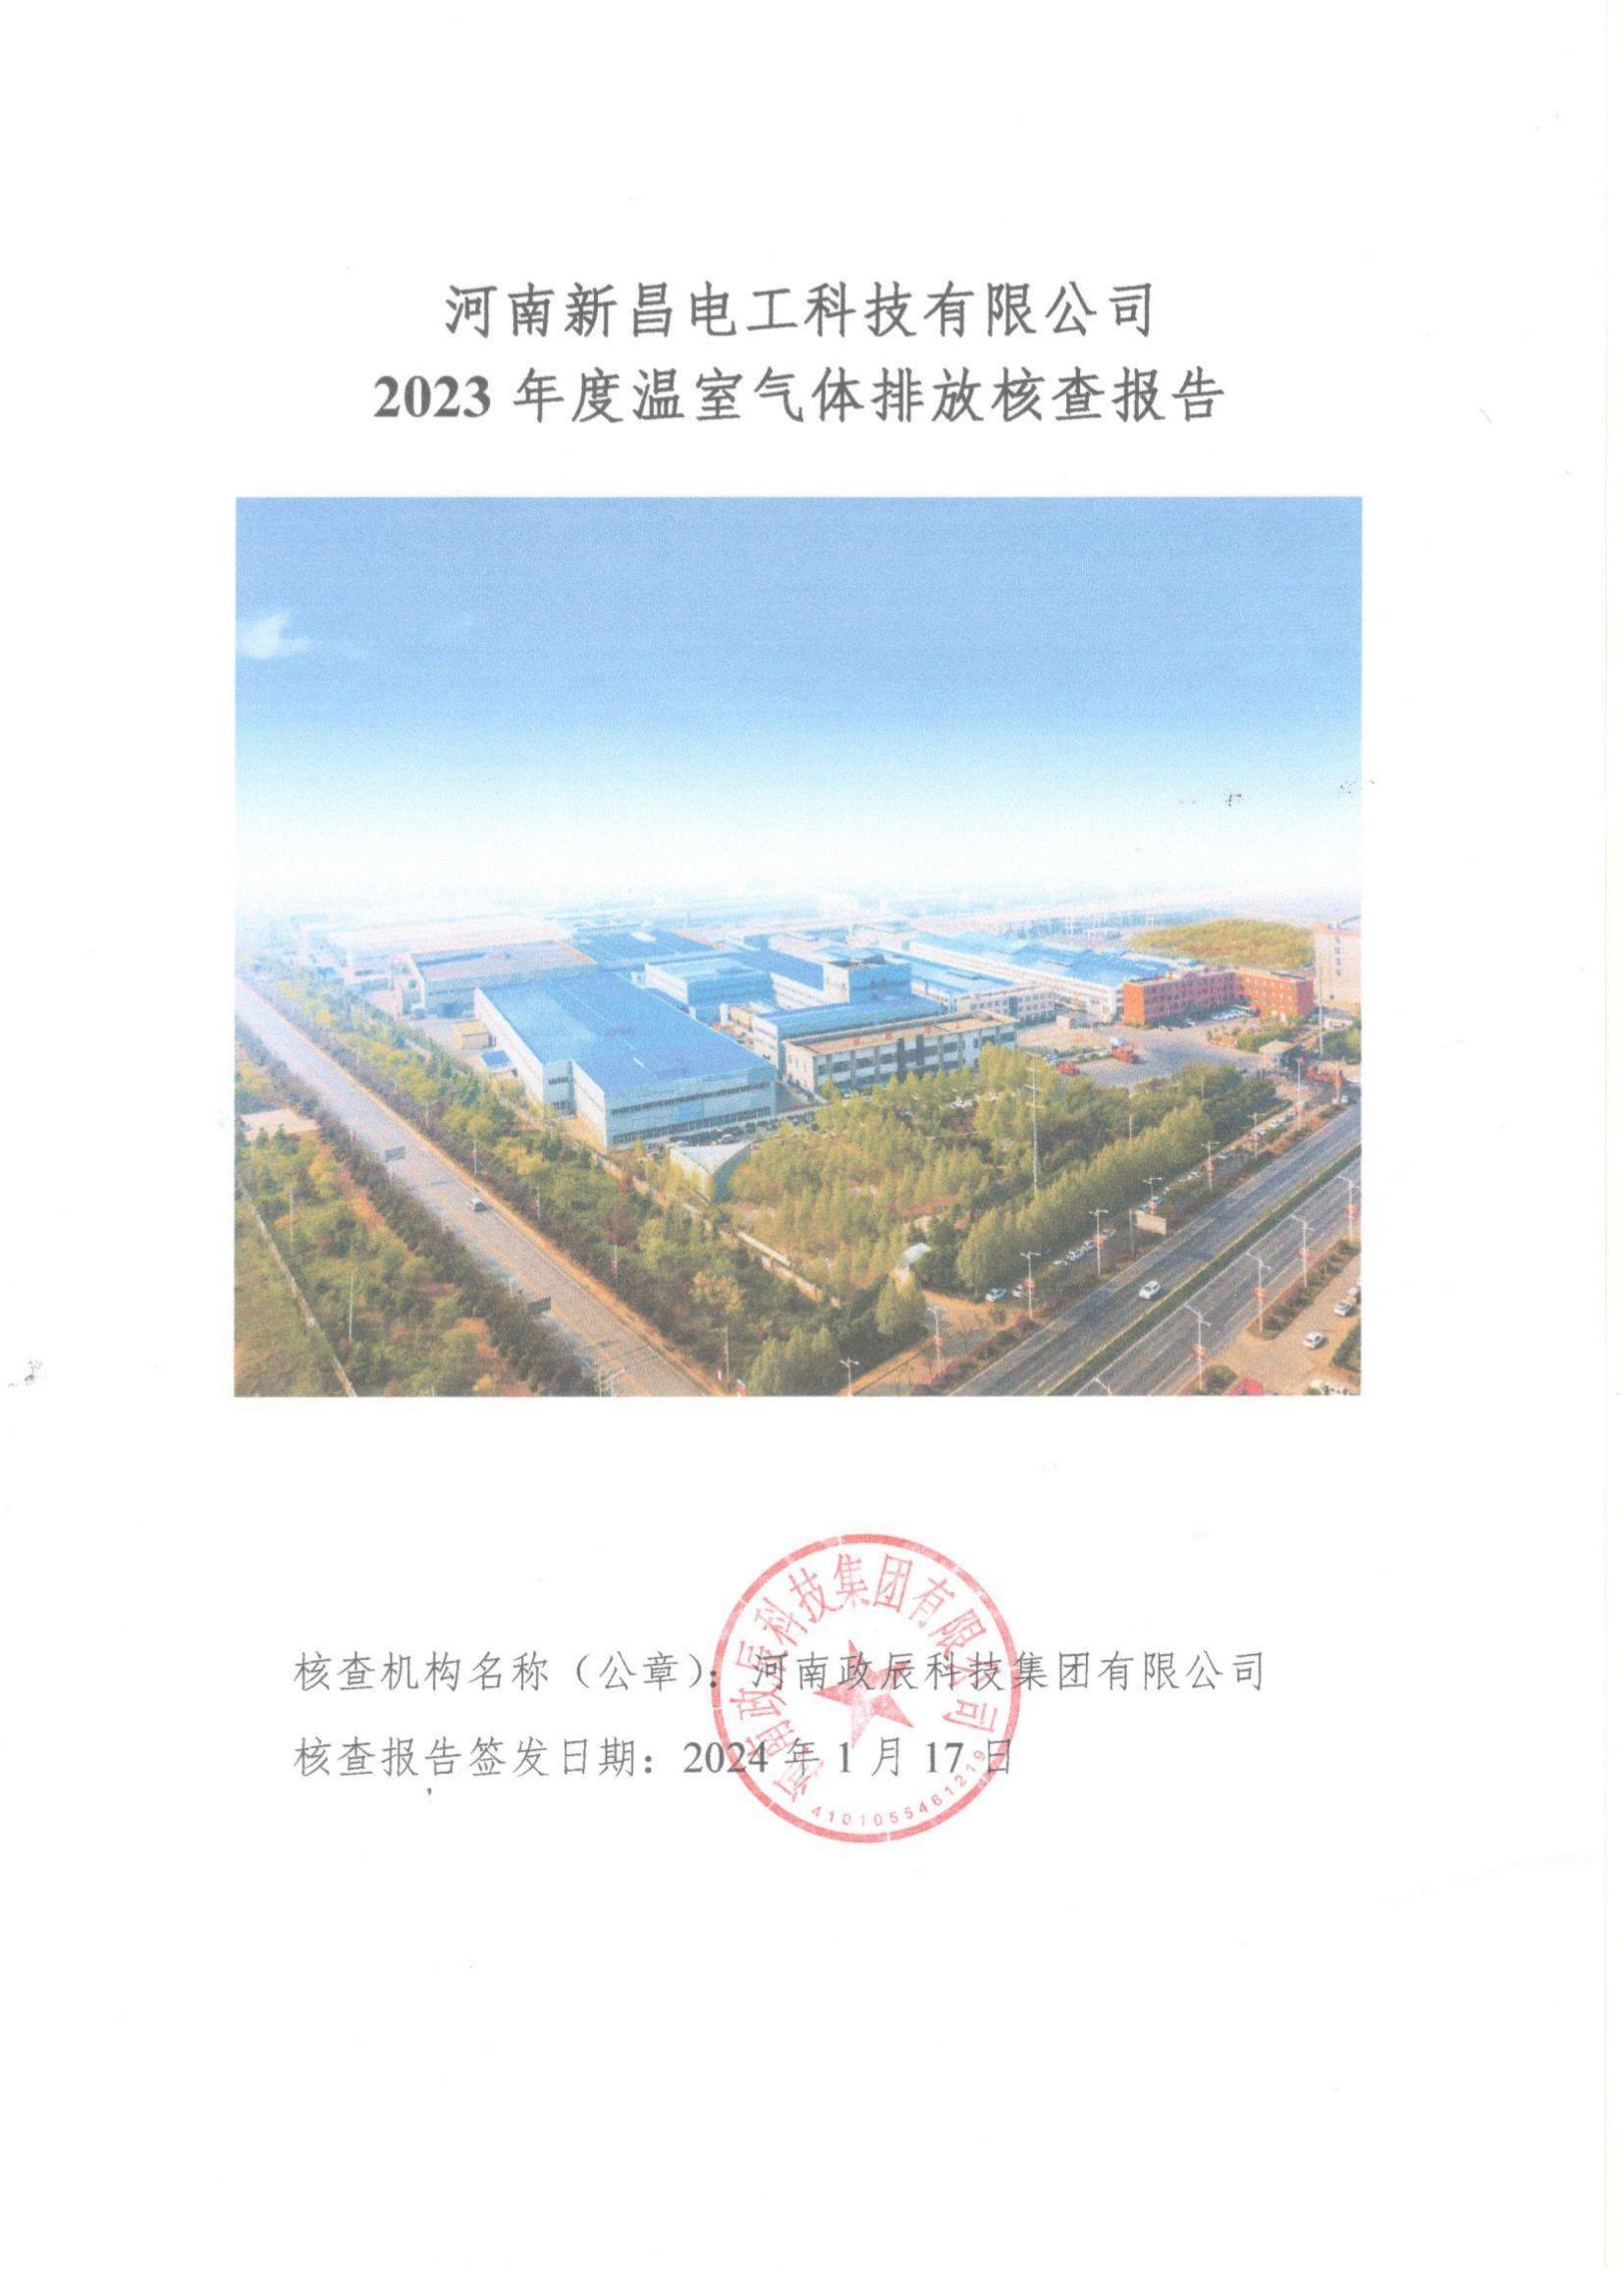 河南新昌电工科技有限公司2023年温室气体排放核查报告